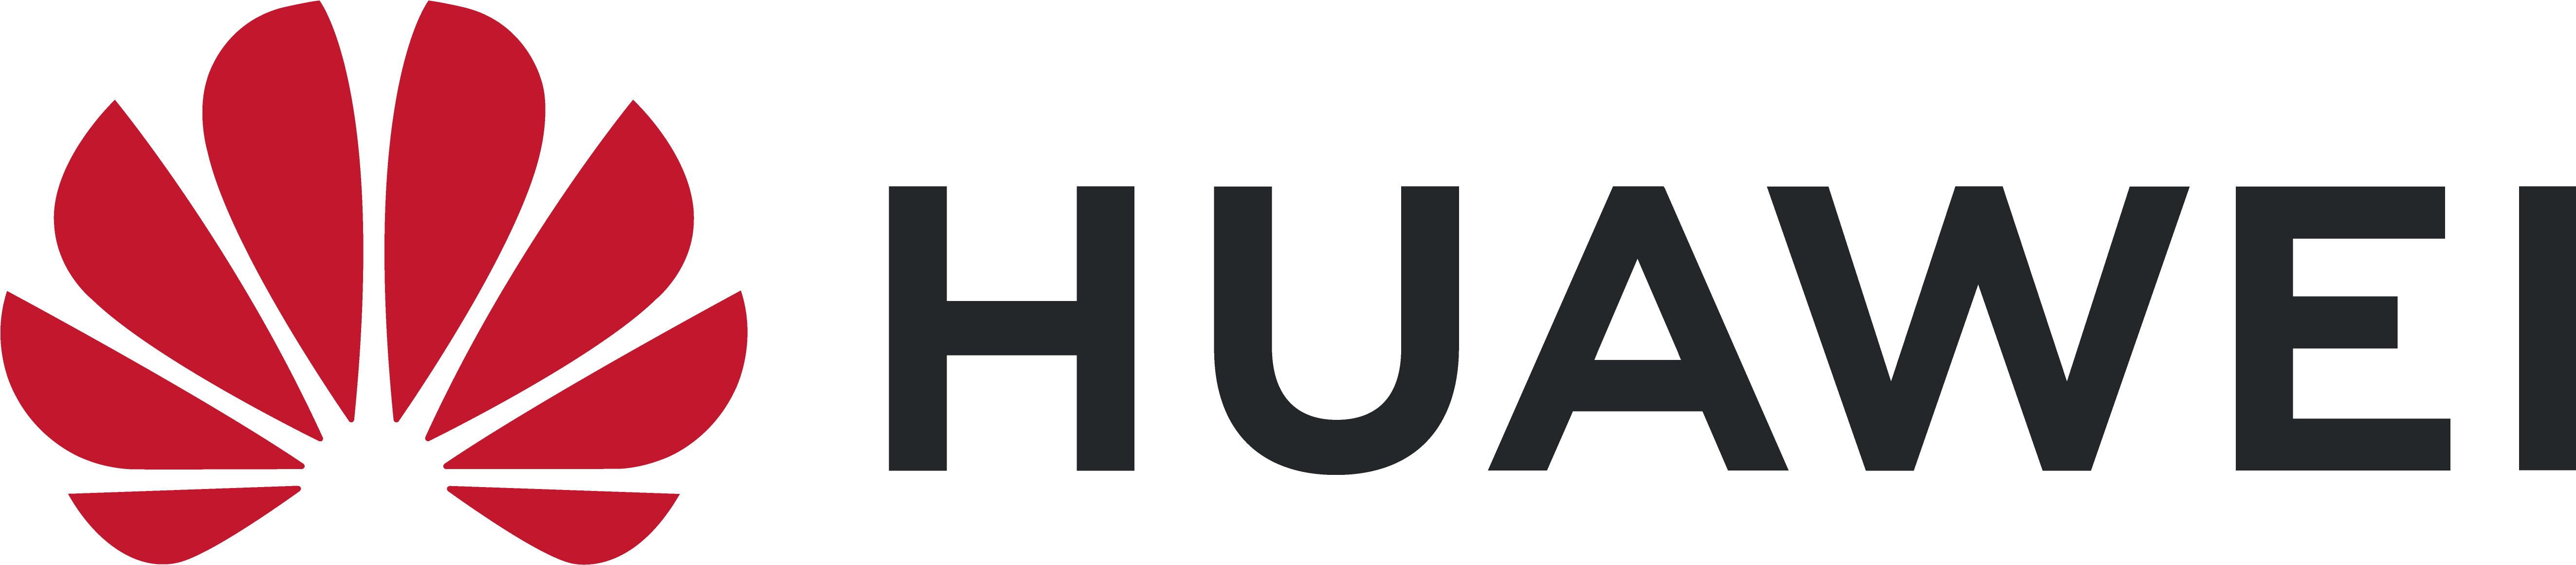 Huawei Logo Png - Huawei New Logo 2019 Clipart (8269x4640), Png Download